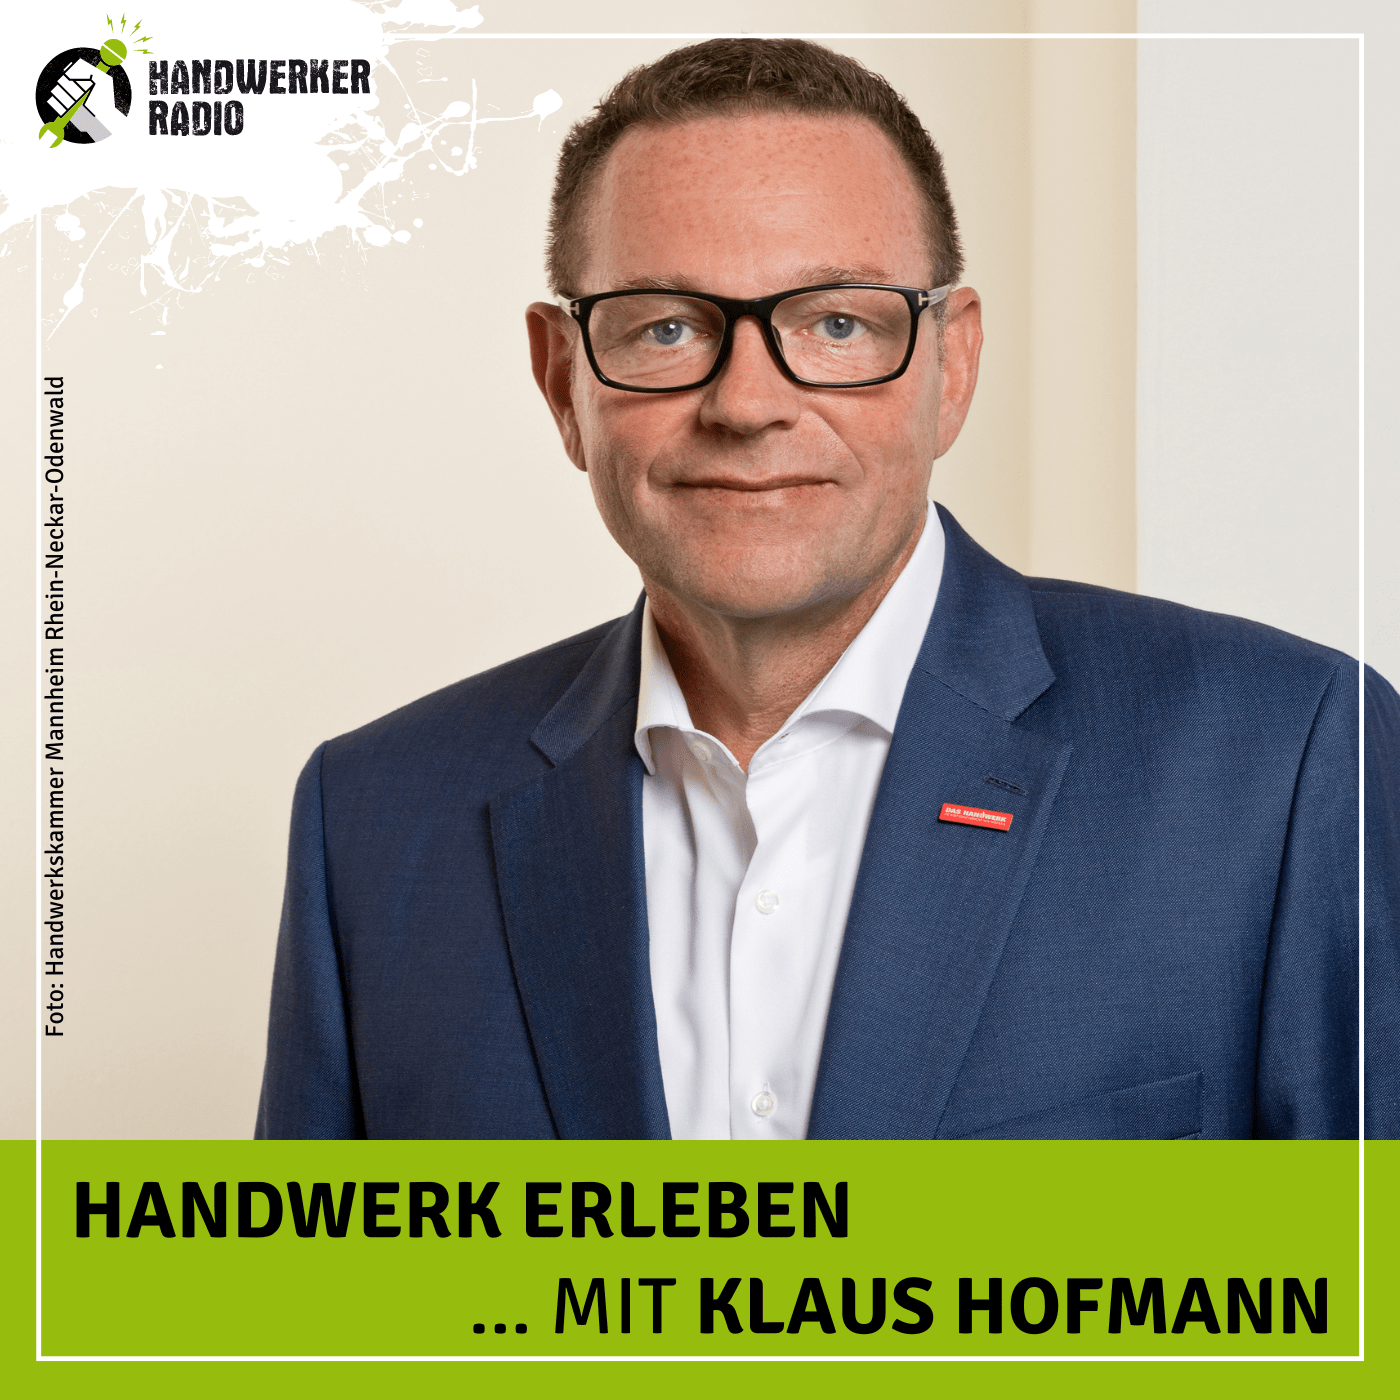 #34 Klaus Hofmann, wie kam es dazu, dass Altbundeskanzler Helmut Kohl zu einem langjährigen Kunden wurde?